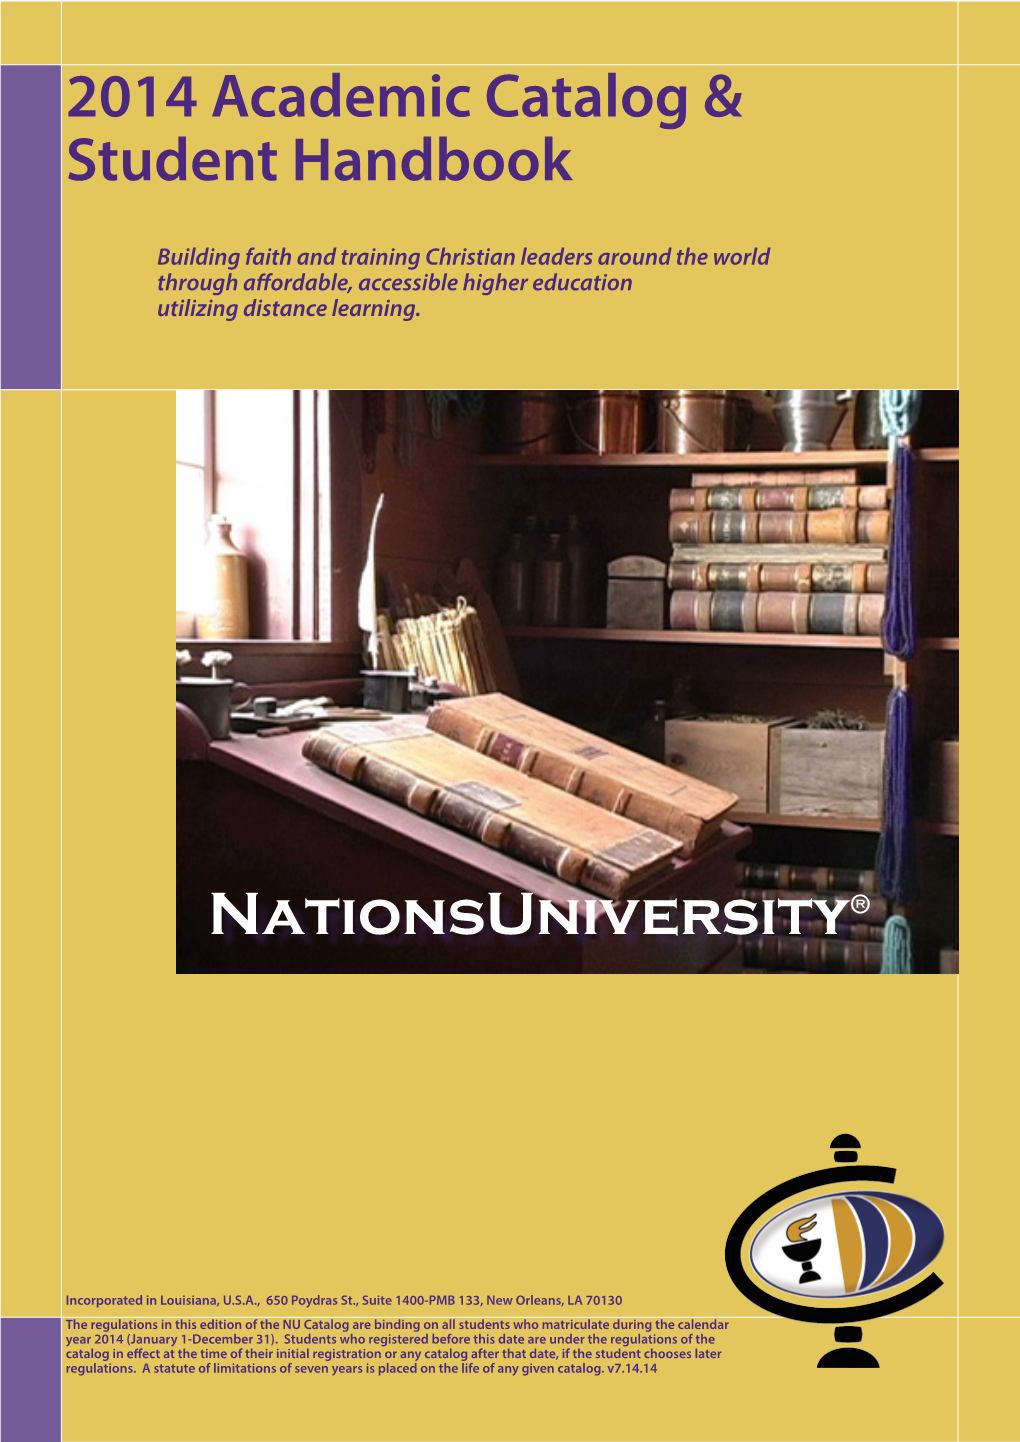 2014 Academic Catalog & Student Handbook Nationsuniversity®